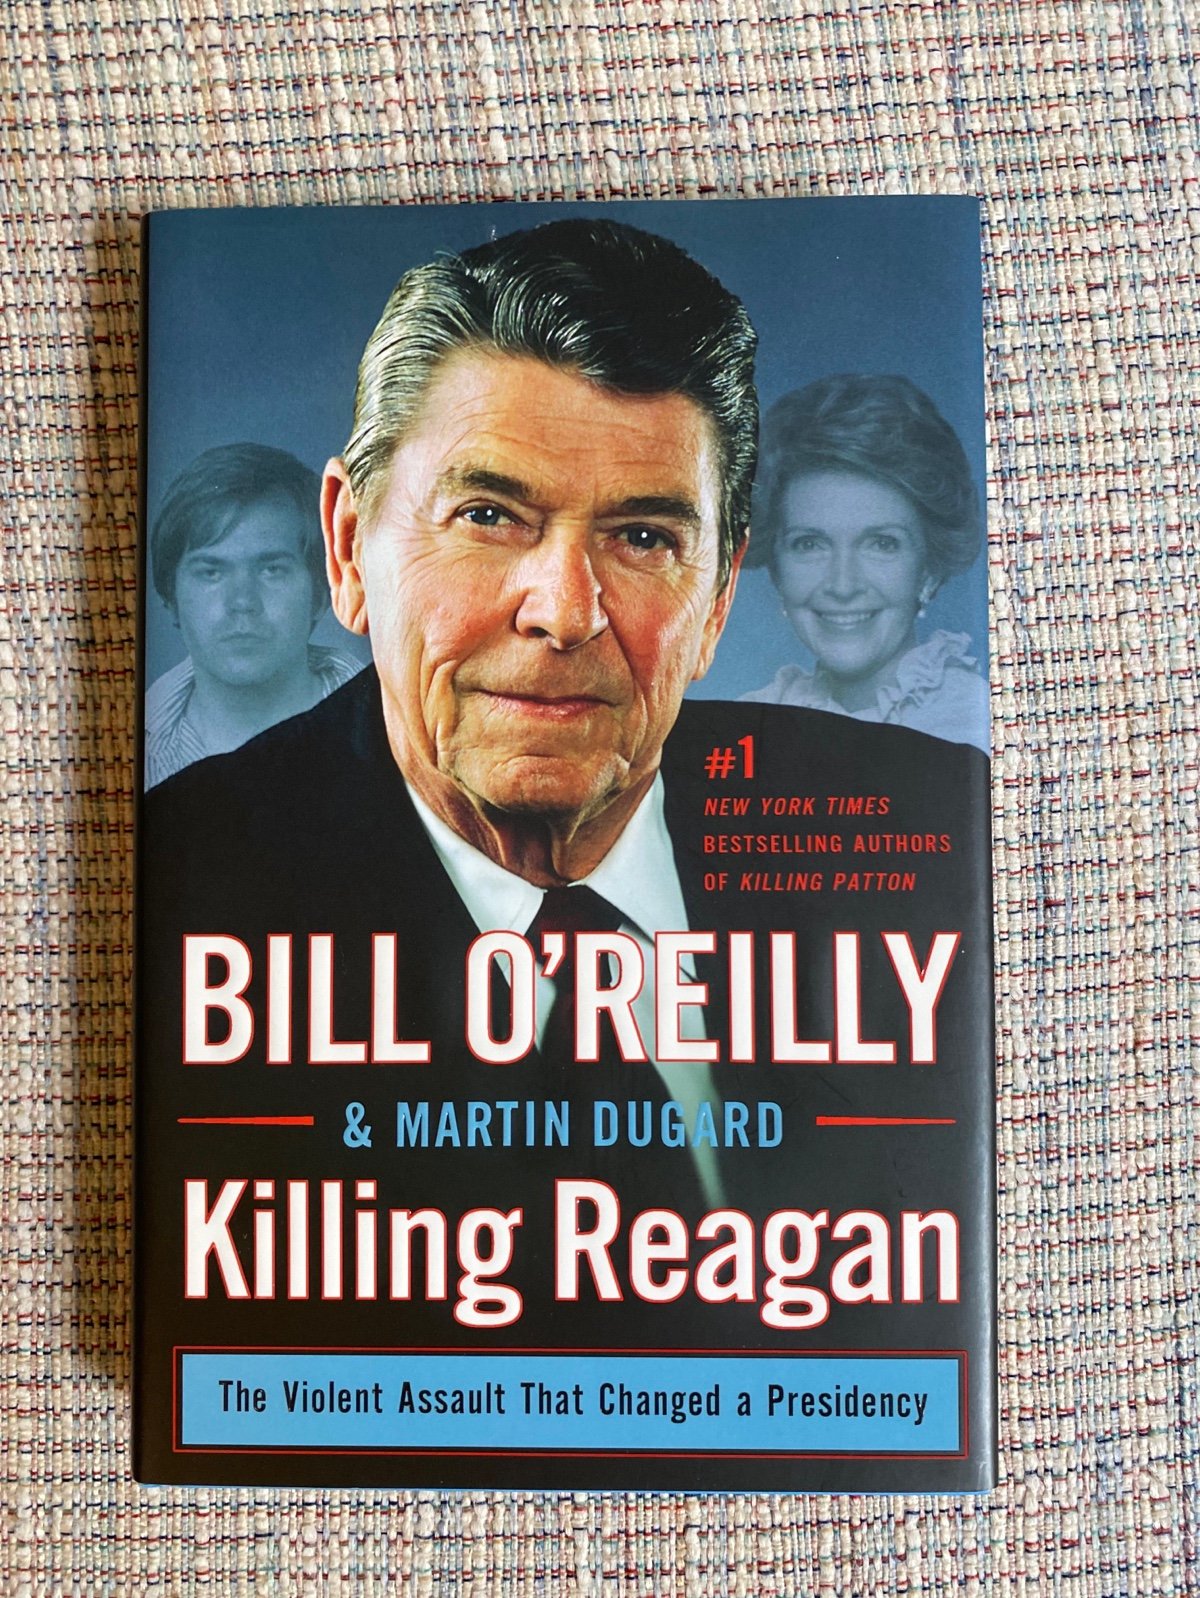 Killing Reagan by Bill O’Reilly gEeTysOvX